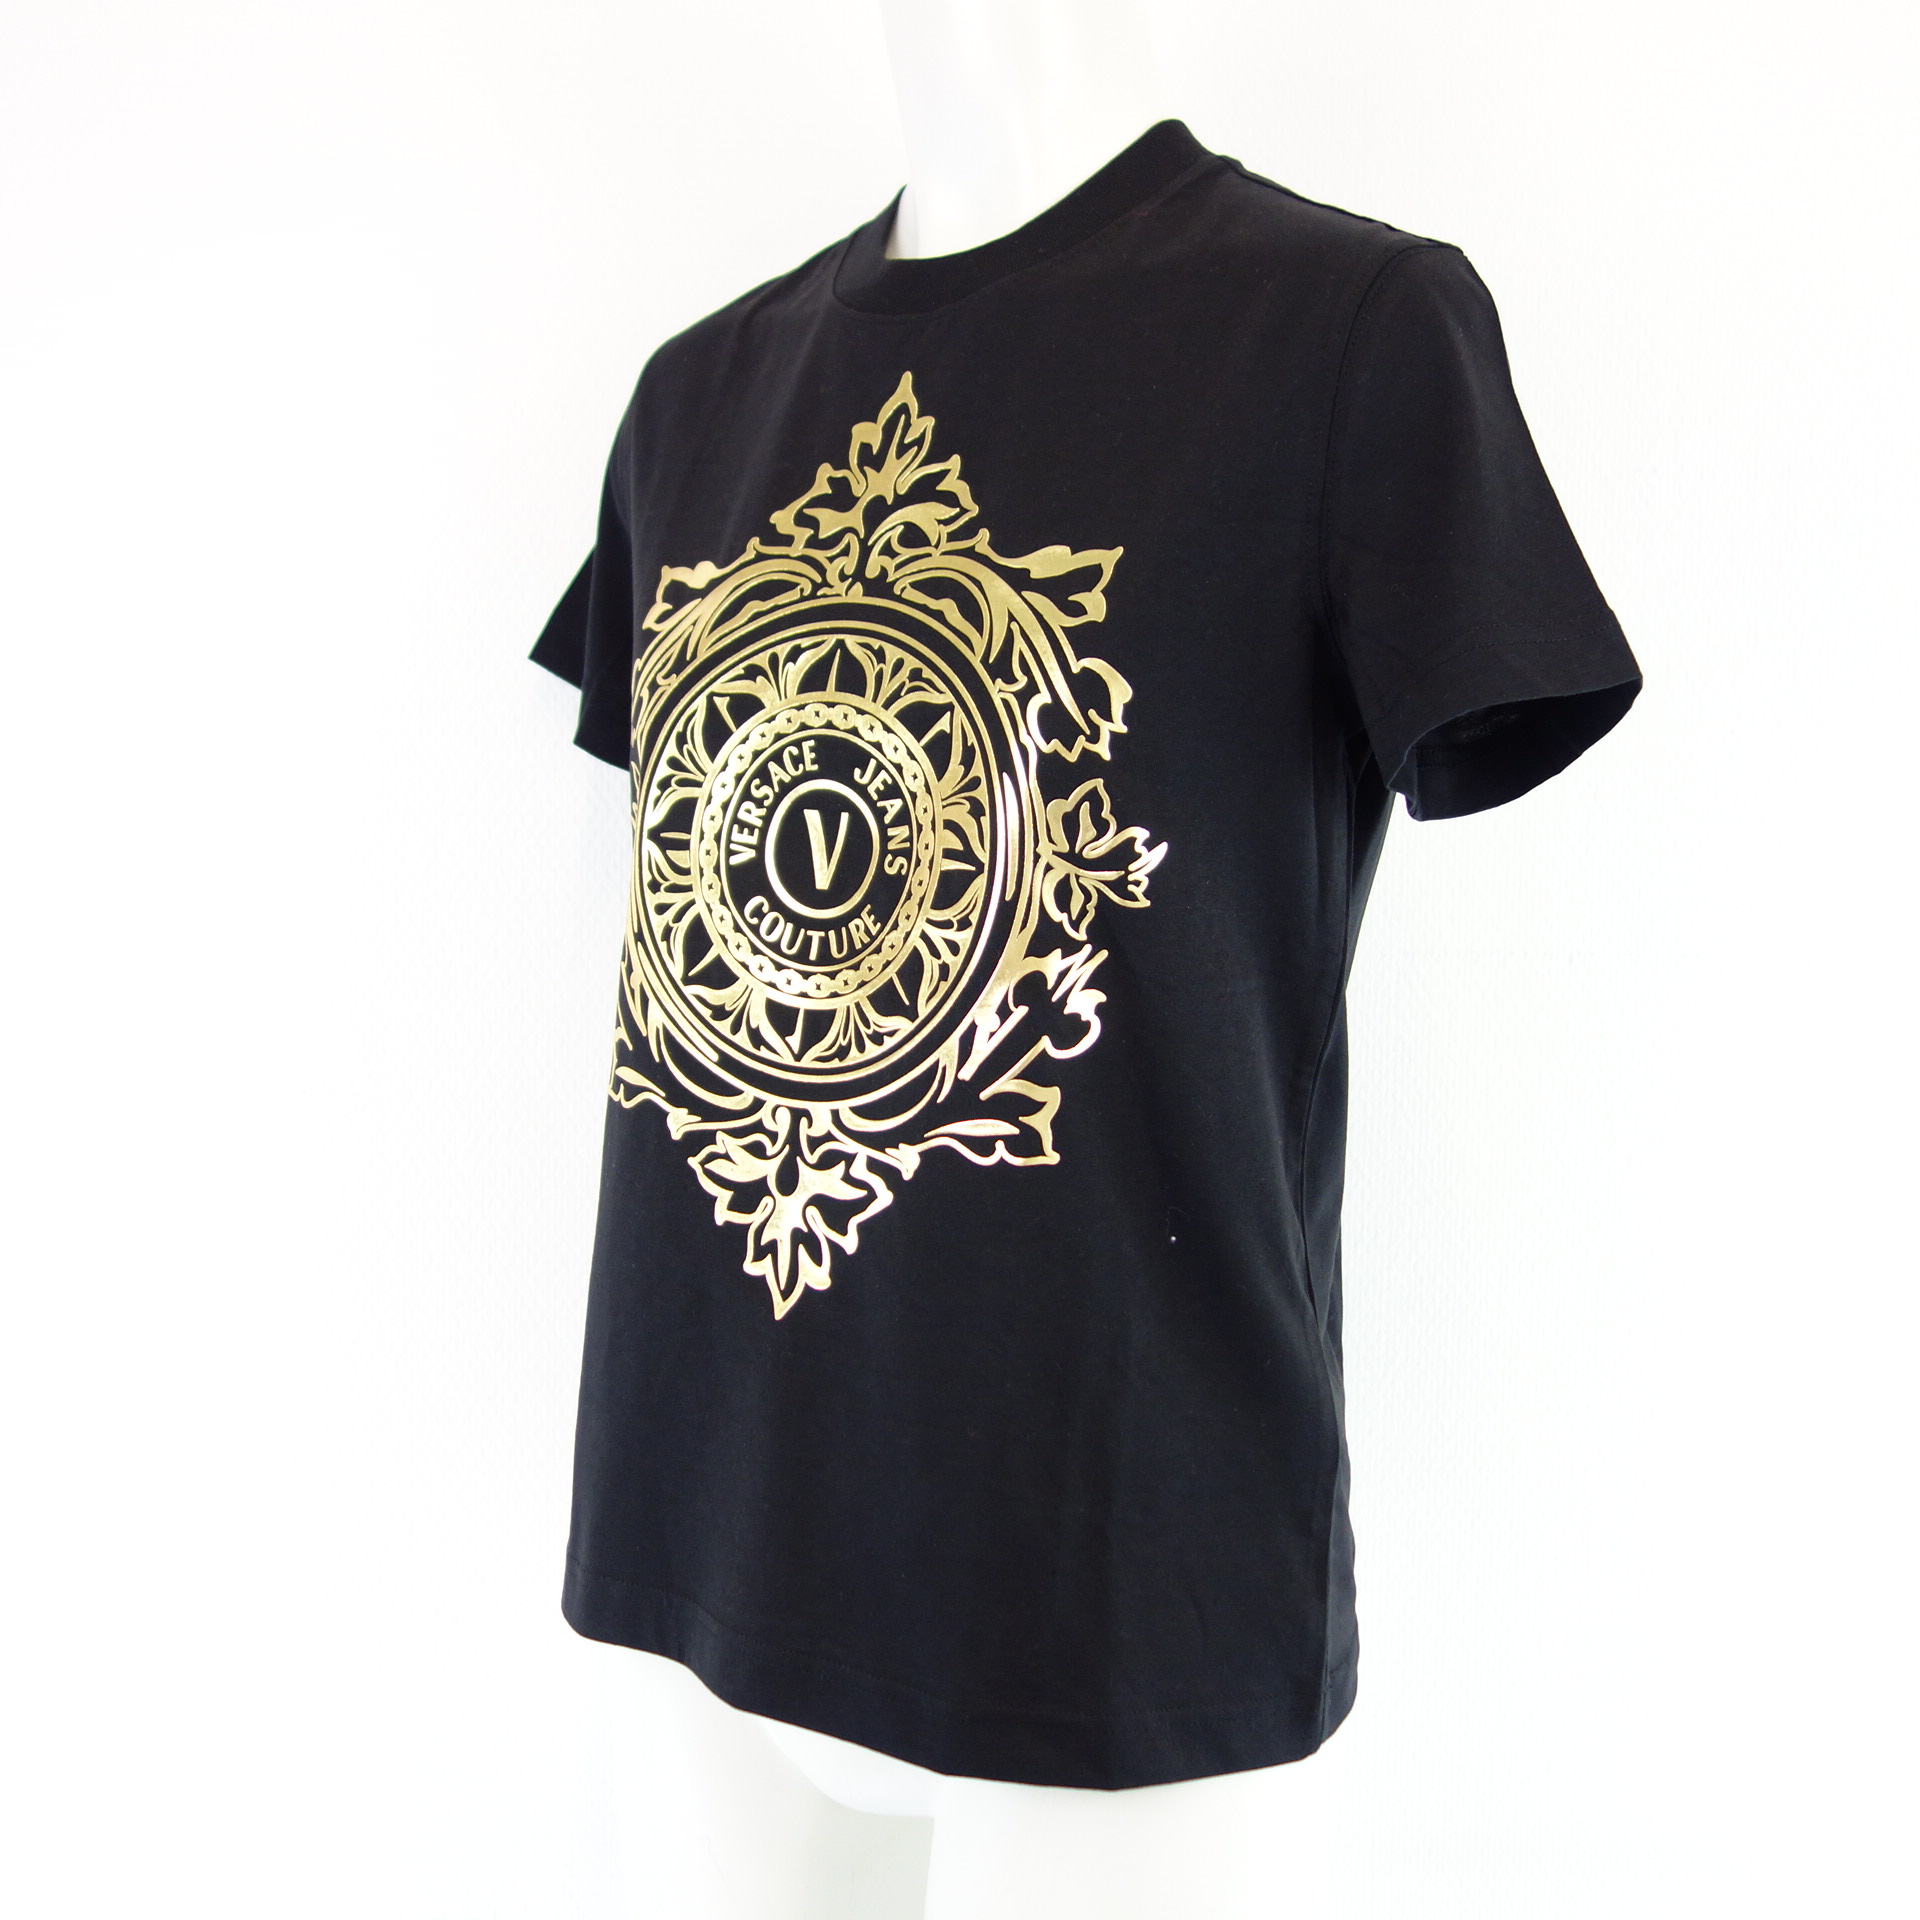 VERSACE JEANS COUTURE Damen T Shirt T-Shirt Damenshirt Oberteil Schwarz Gold Logo Print 